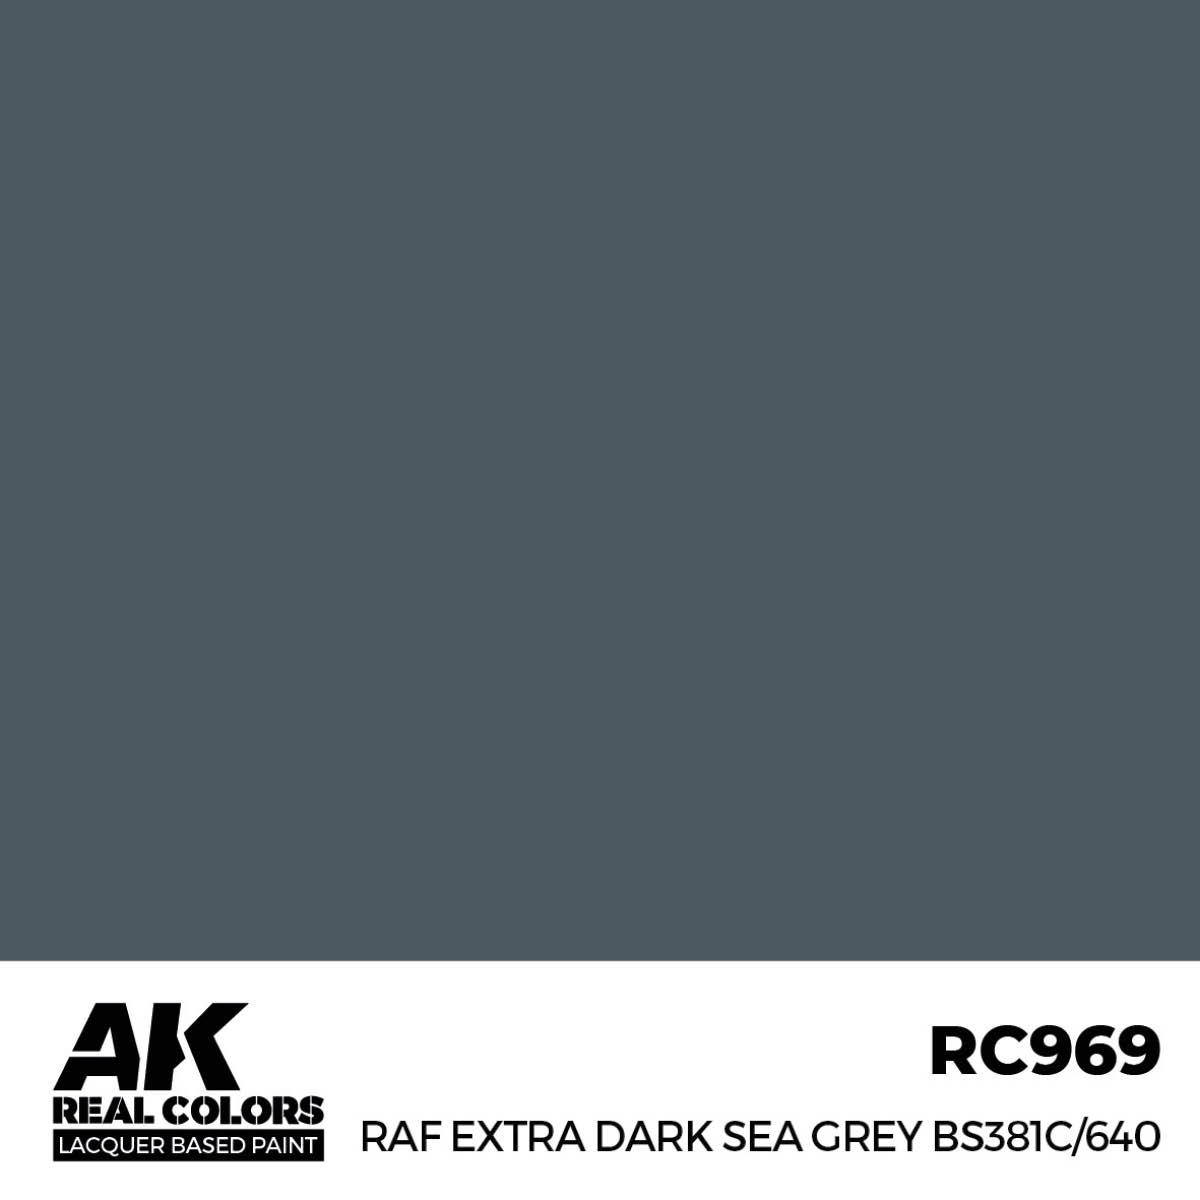 RAF Extra Dark Sea Grey BS381C/640